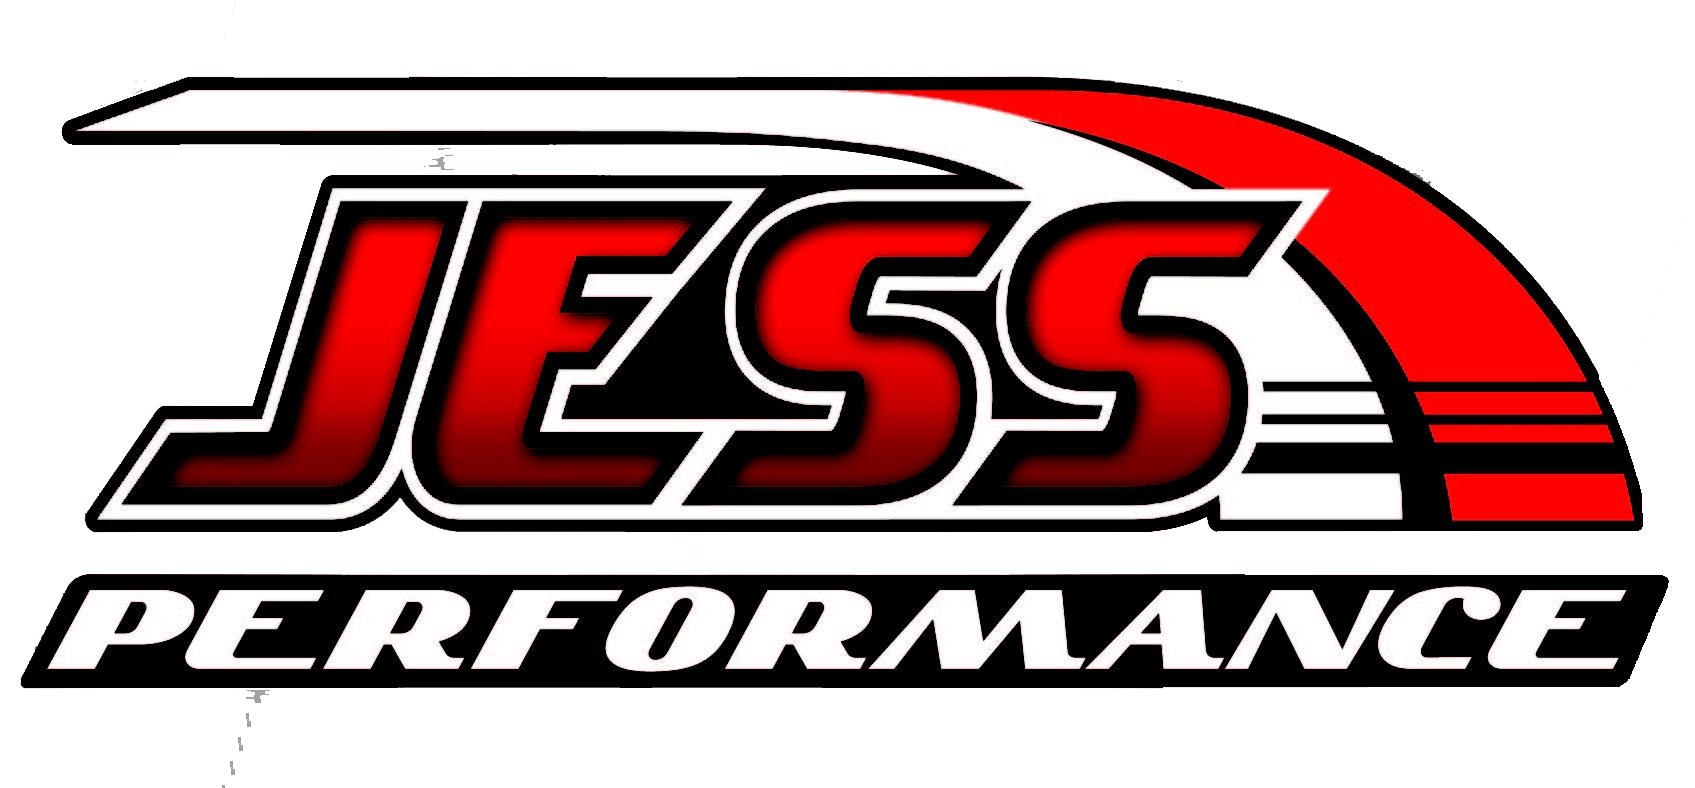 Diesel Mechanic Shop Logo - Jess